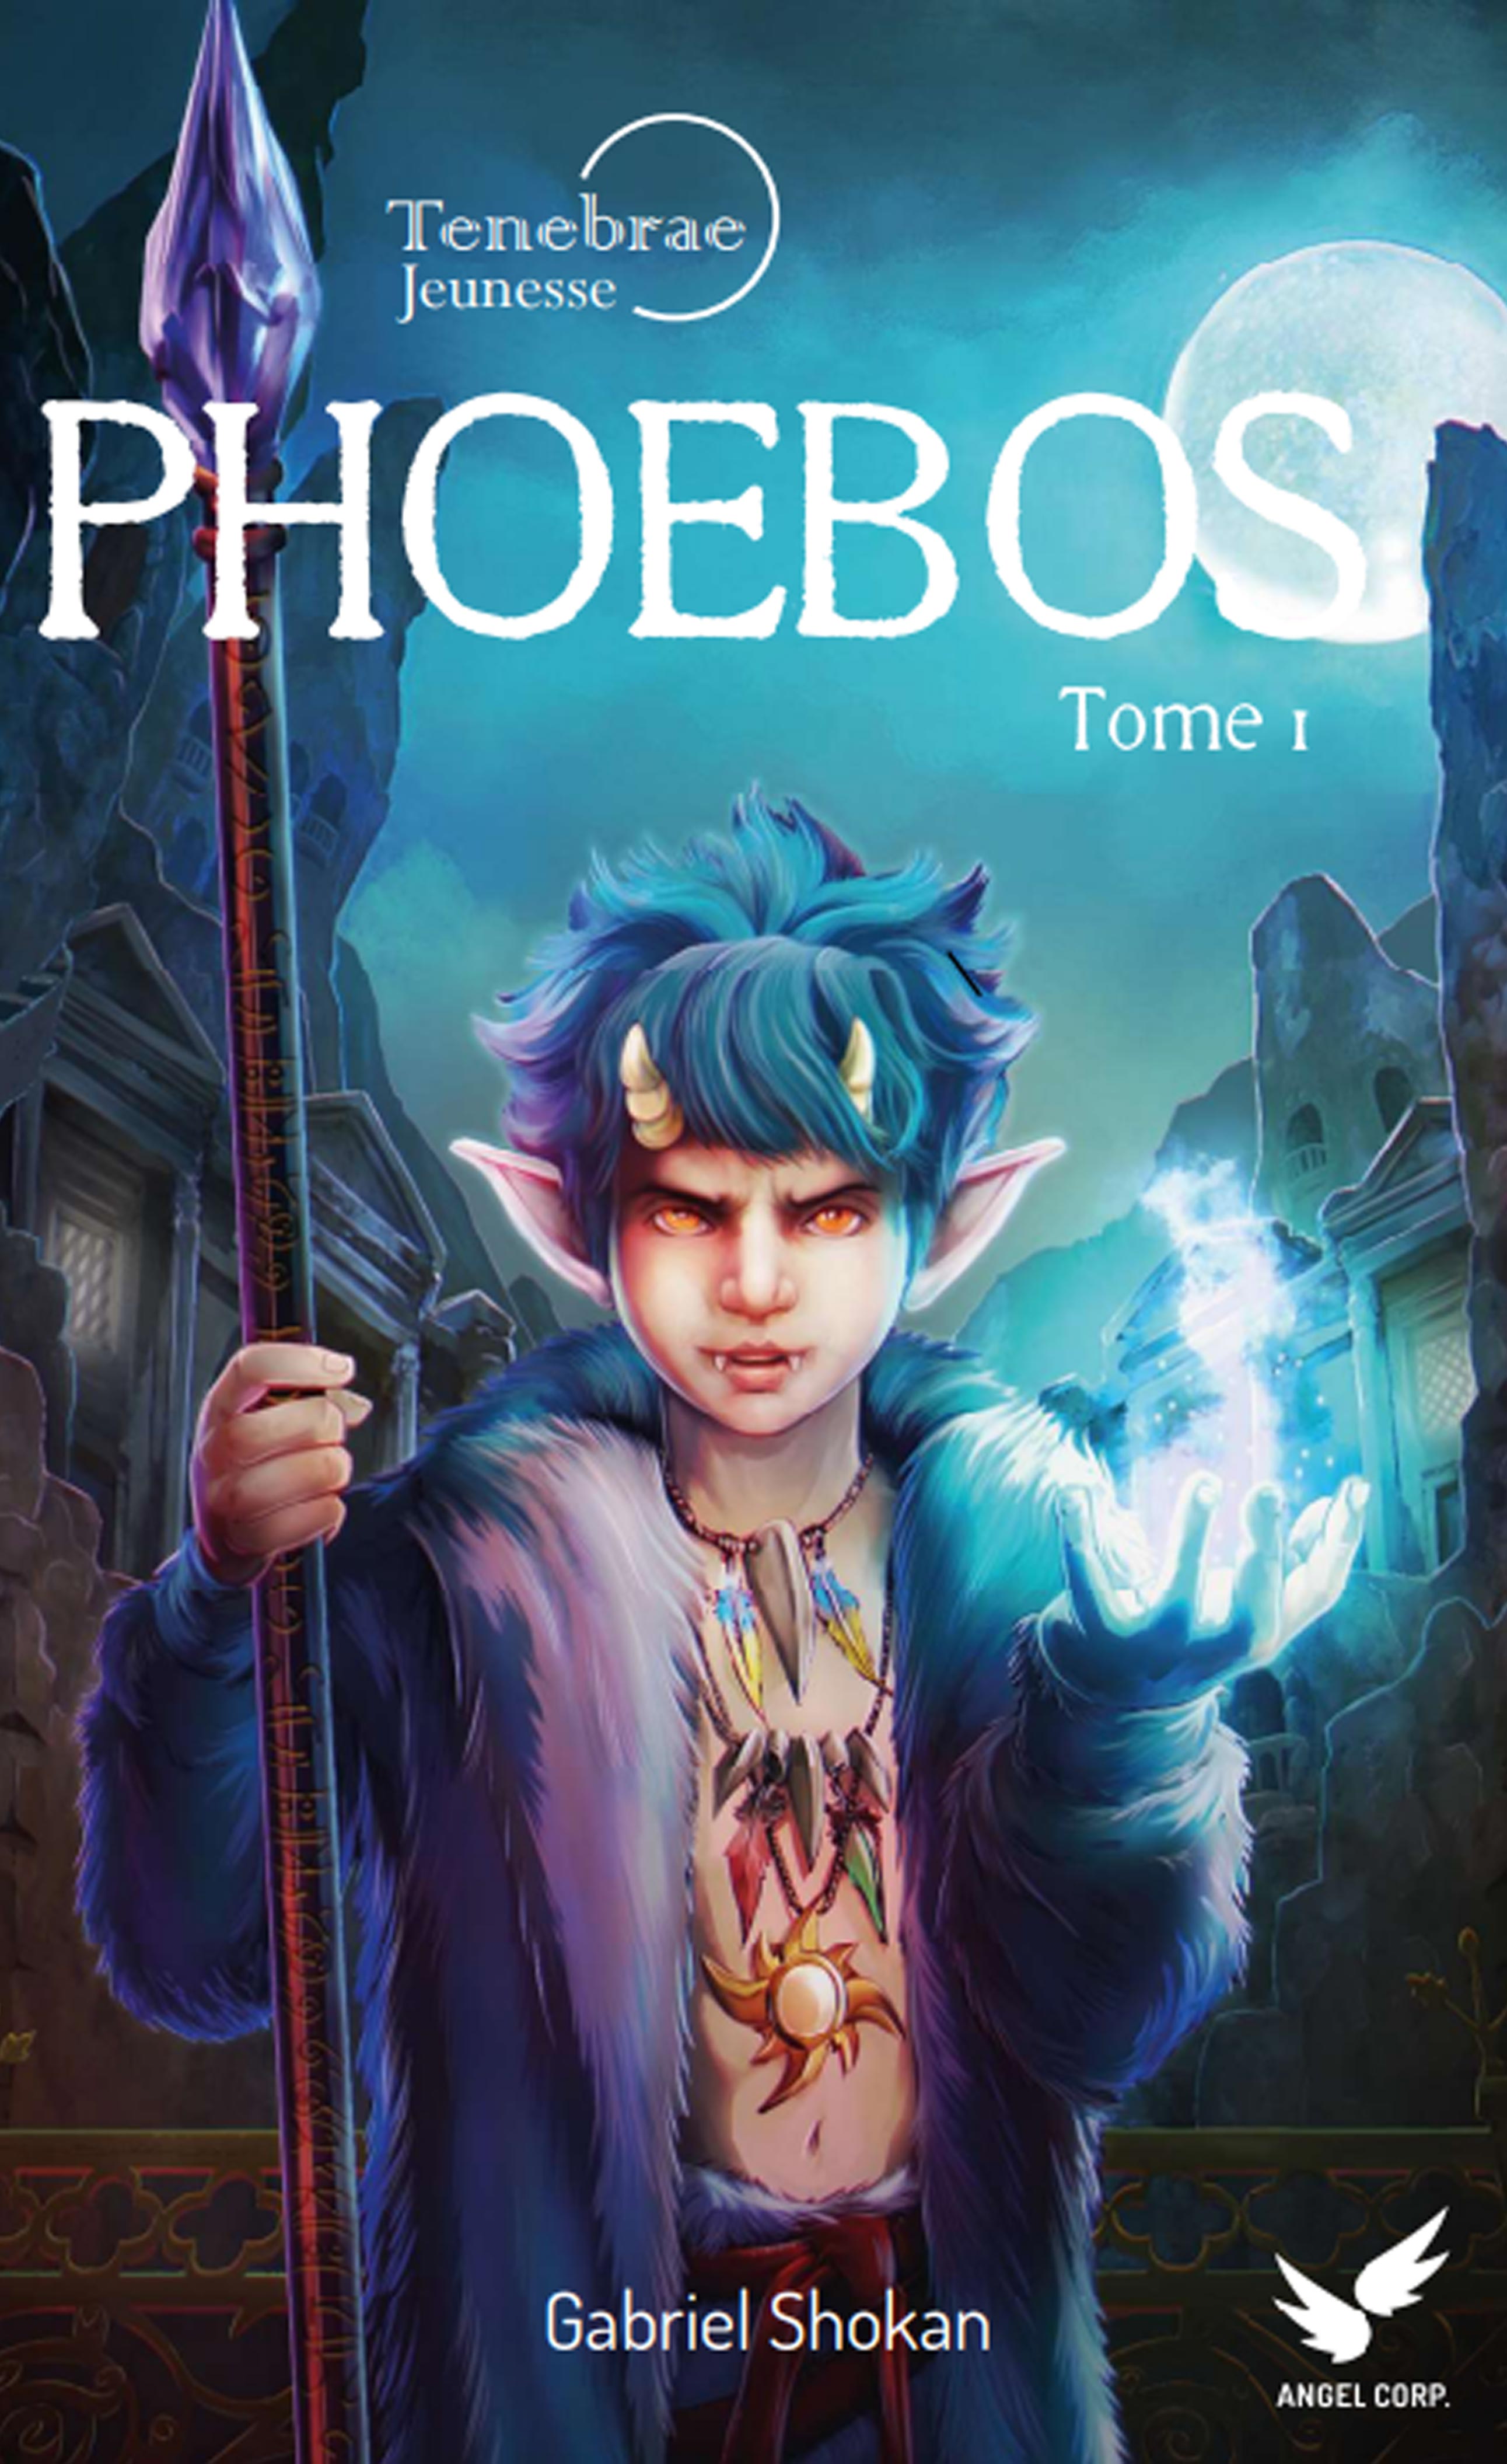 Couverture de Phoebos version jeunesse Tome 1 , le premier roman de darkfantasy pour enfants du cycle de Tenebrae écrit par Gabriel Shokan 